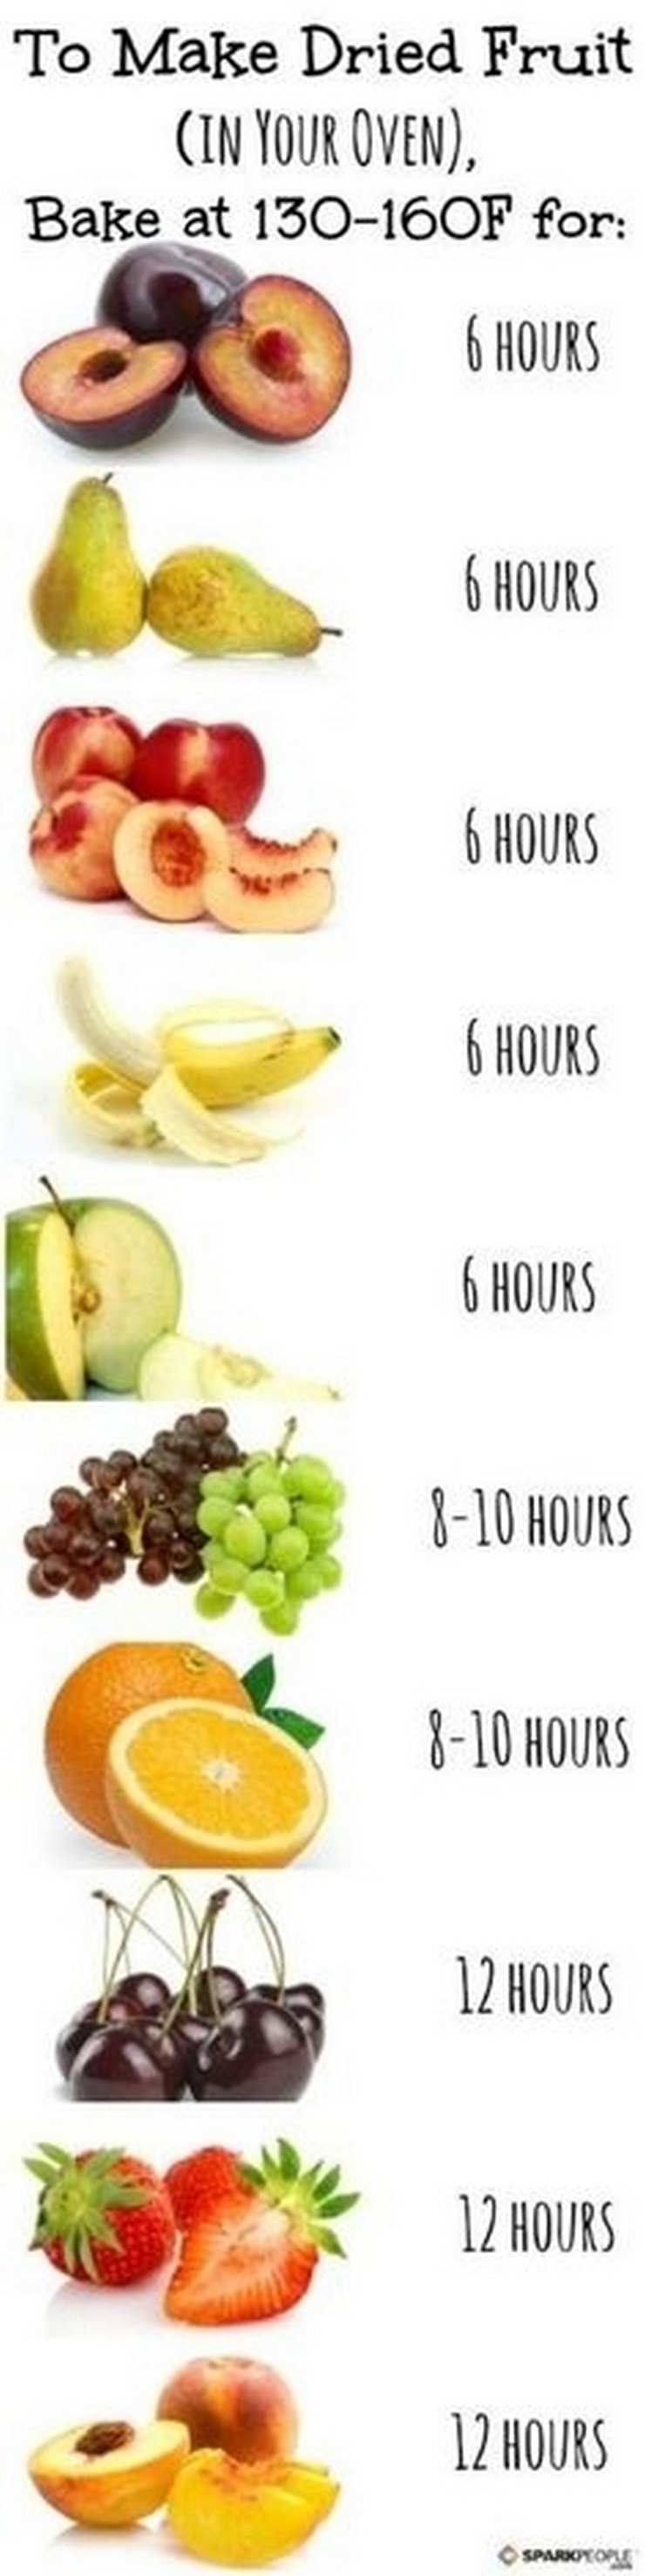 "trucos que te ayudarán a disfrutar de la fruta y harán tu vida más fácil"